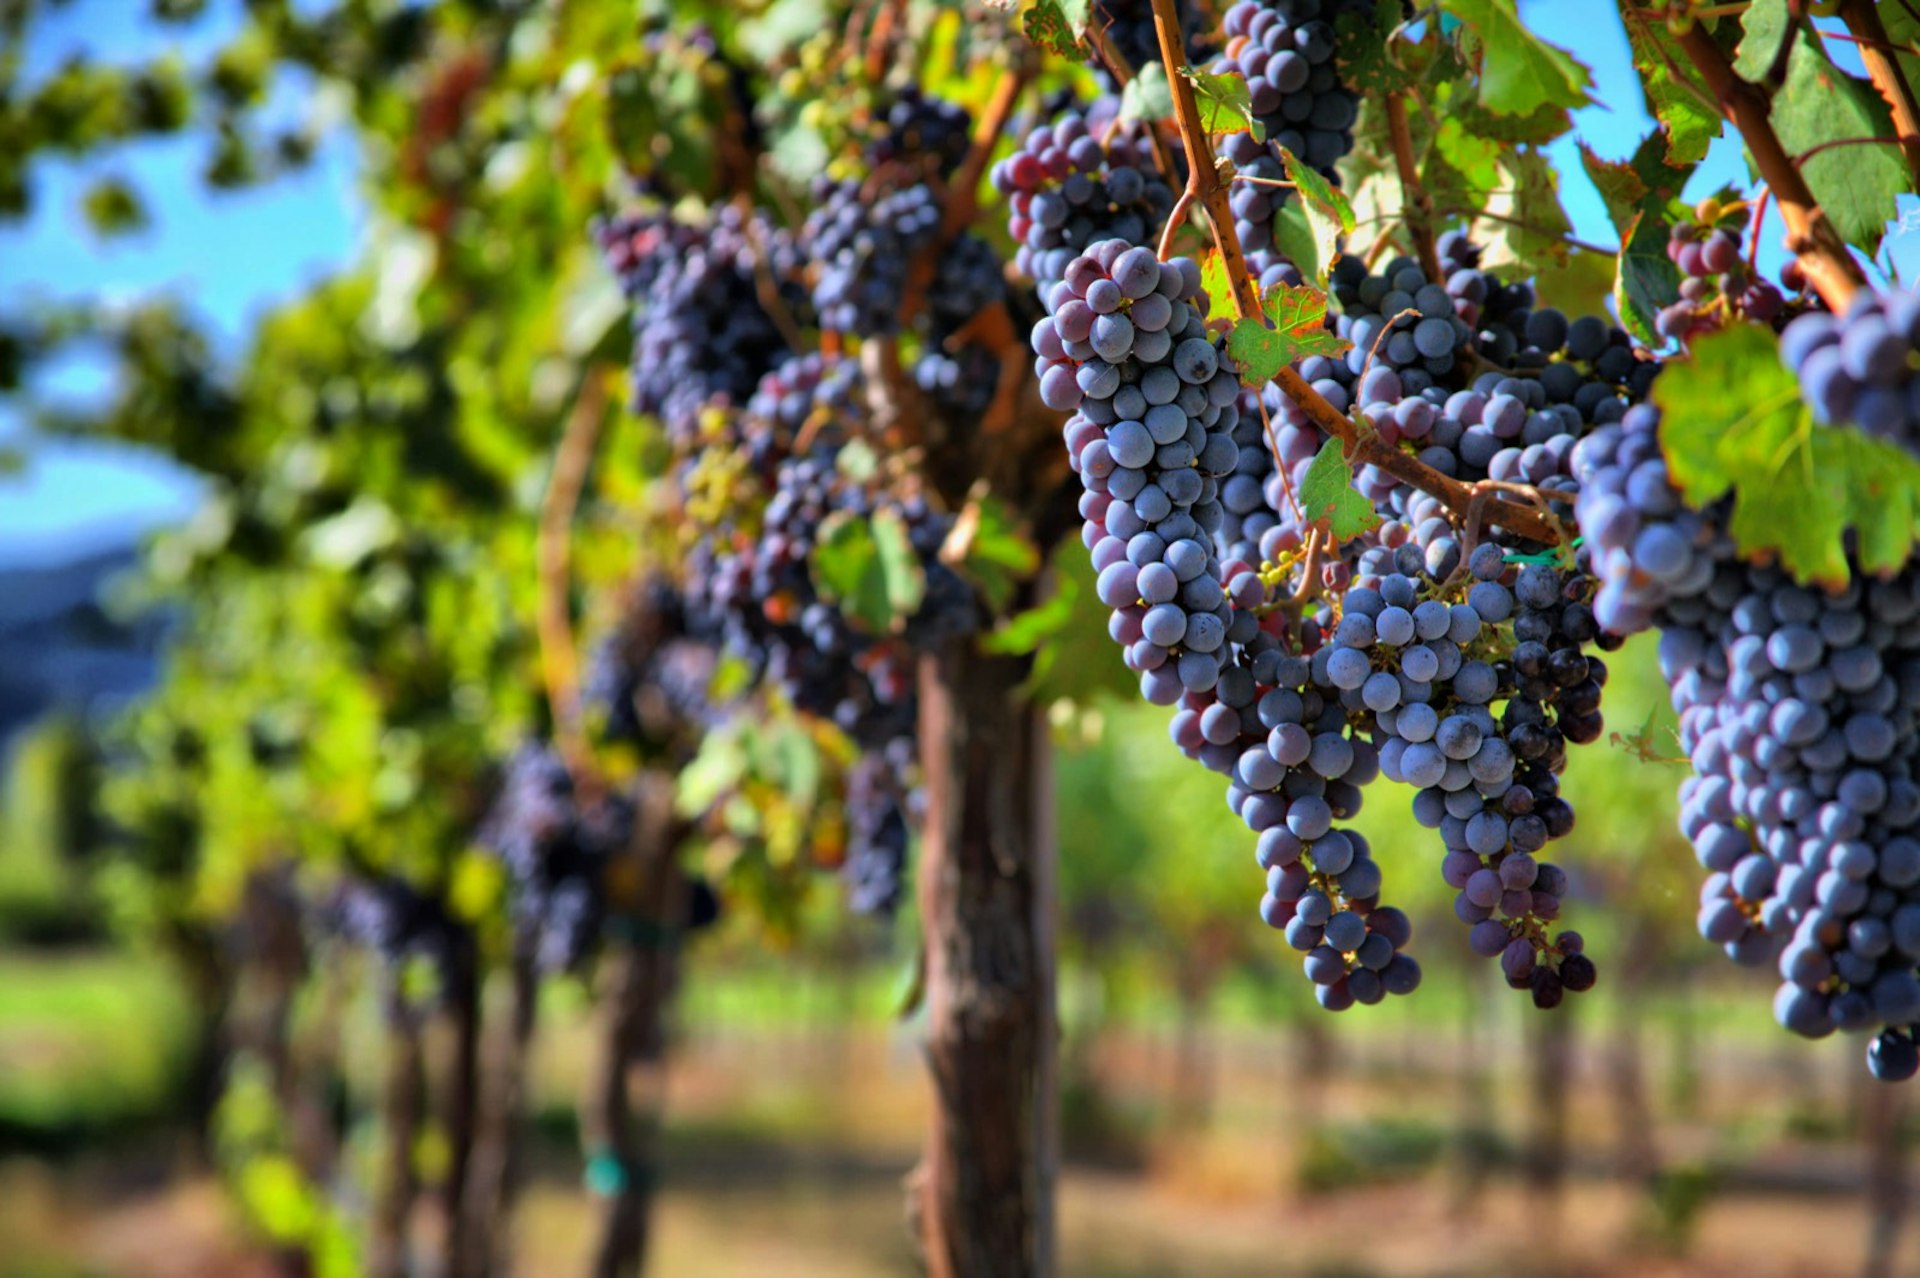 Merlotdruvor på vinstockar i vingård;  Kaliforniens vinland